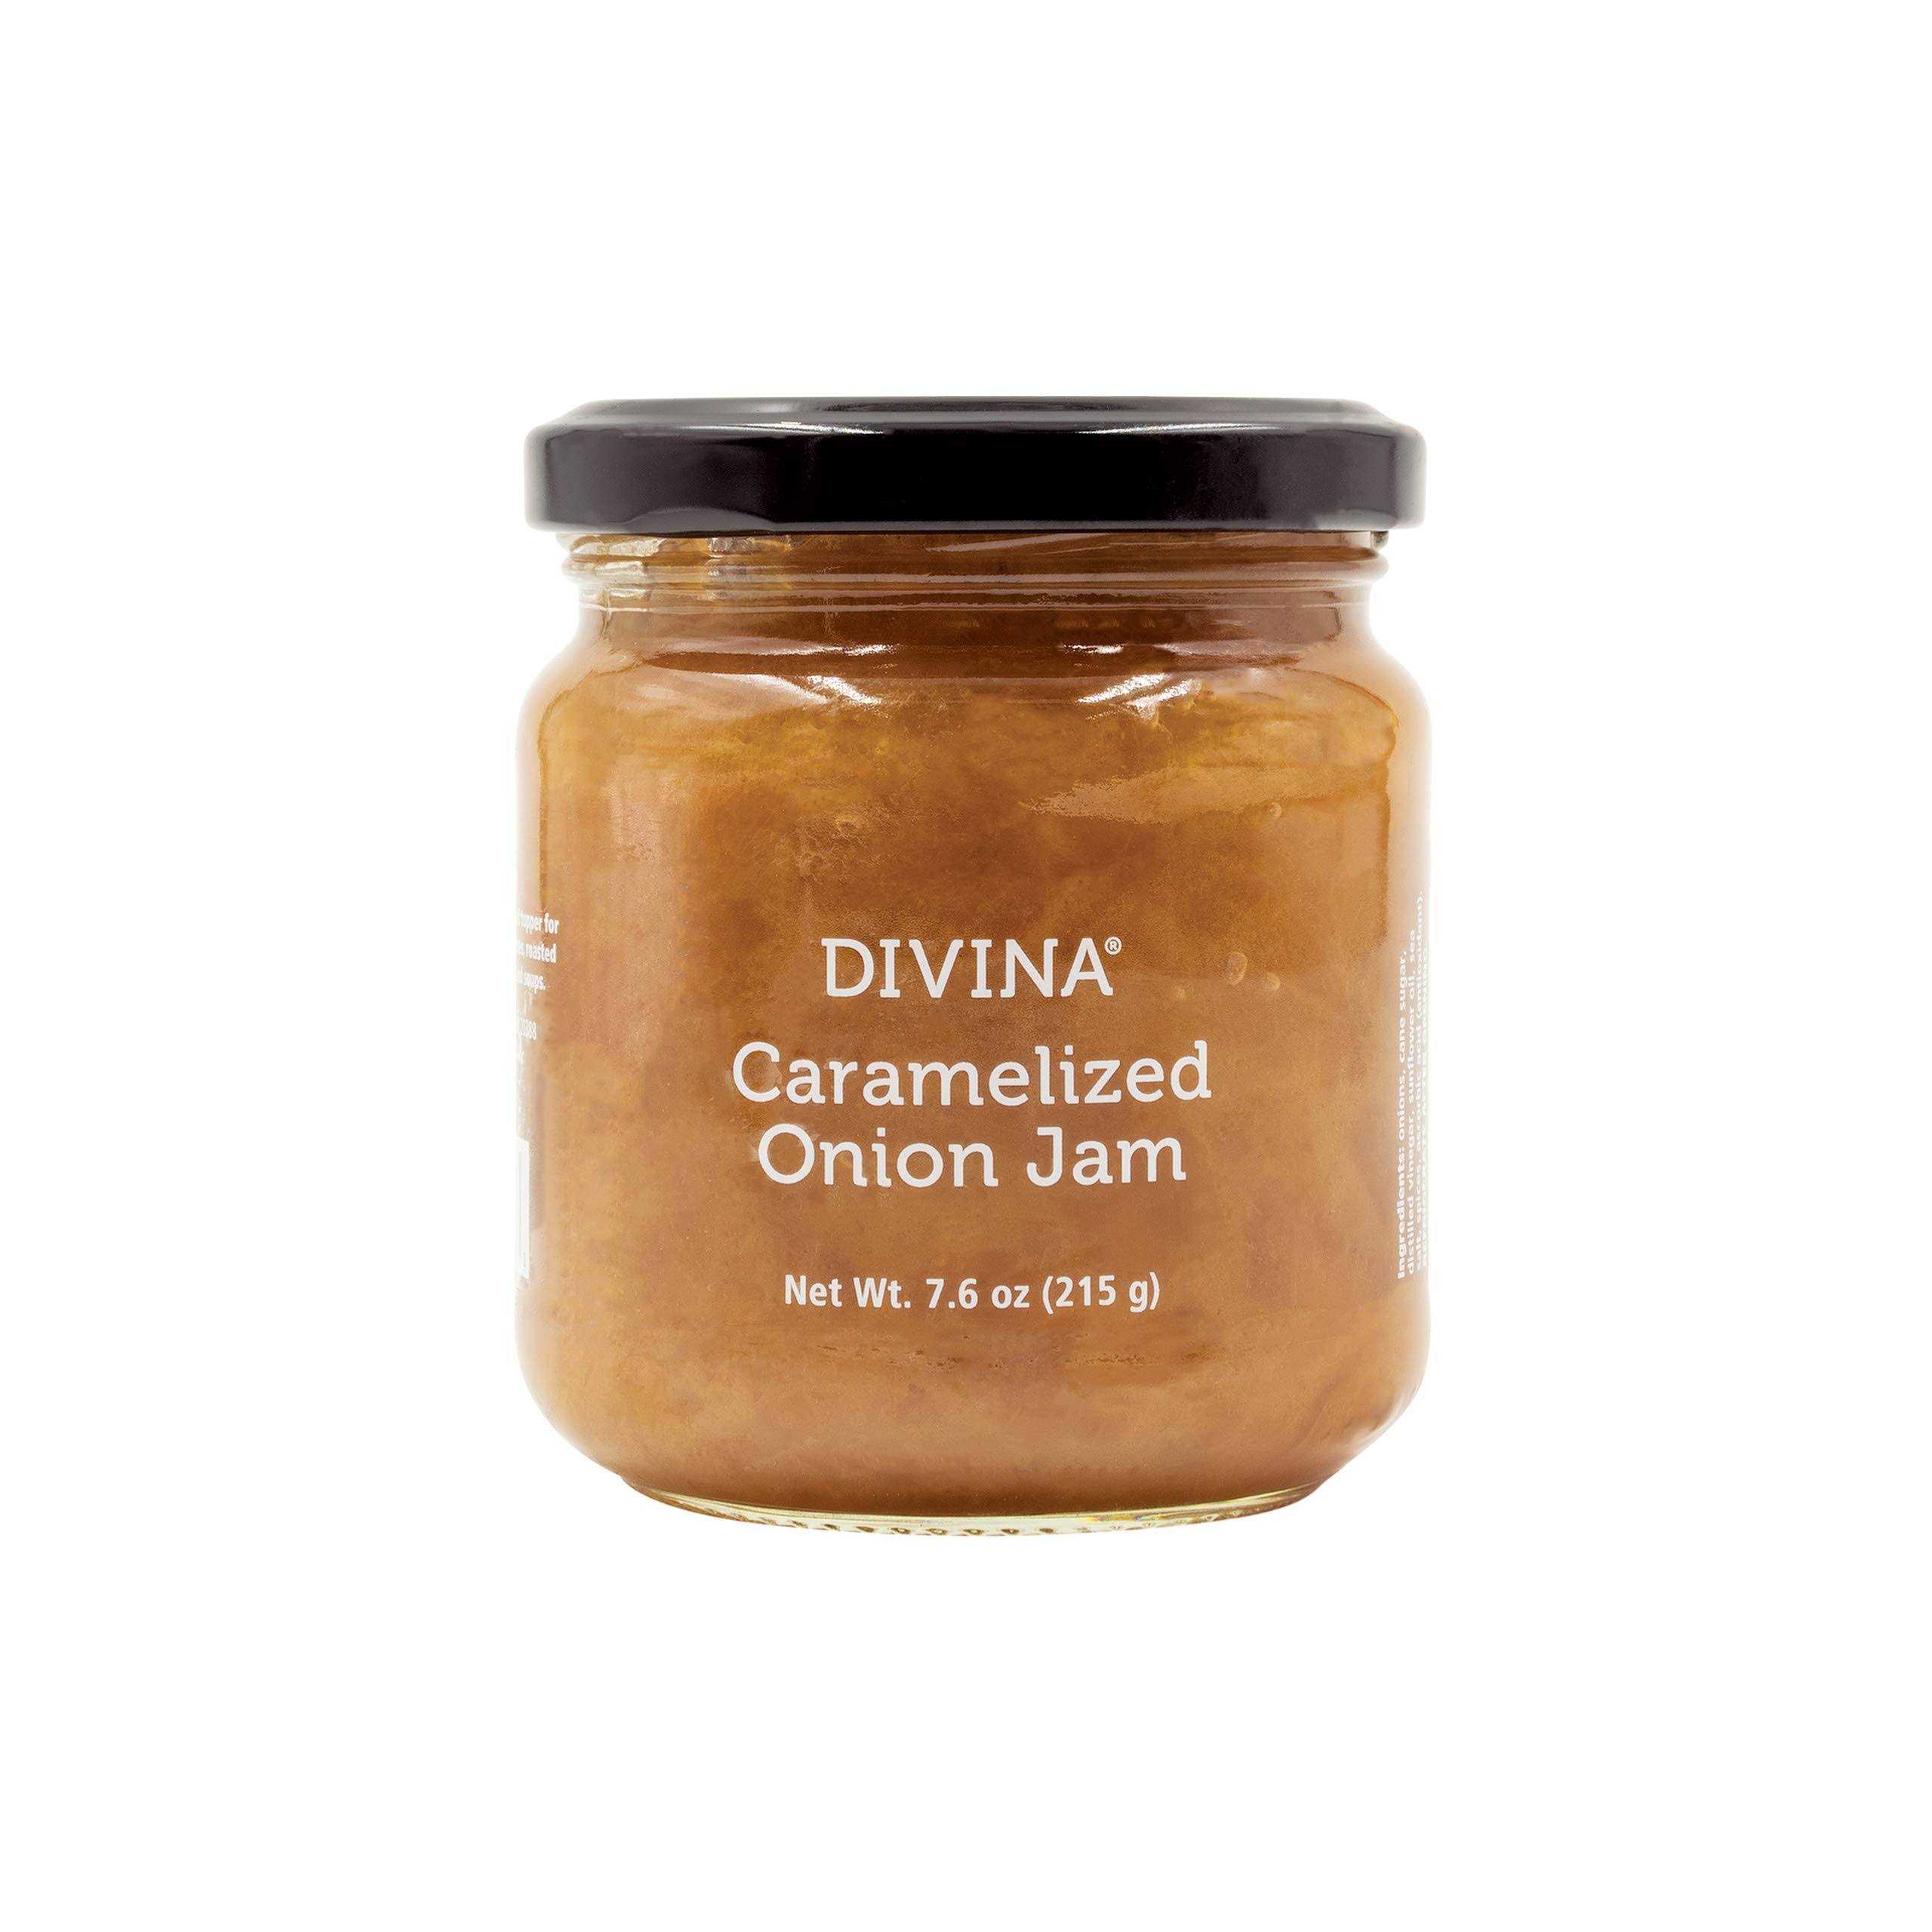 Divina Caramelized Onion Jam - 7.6 oz